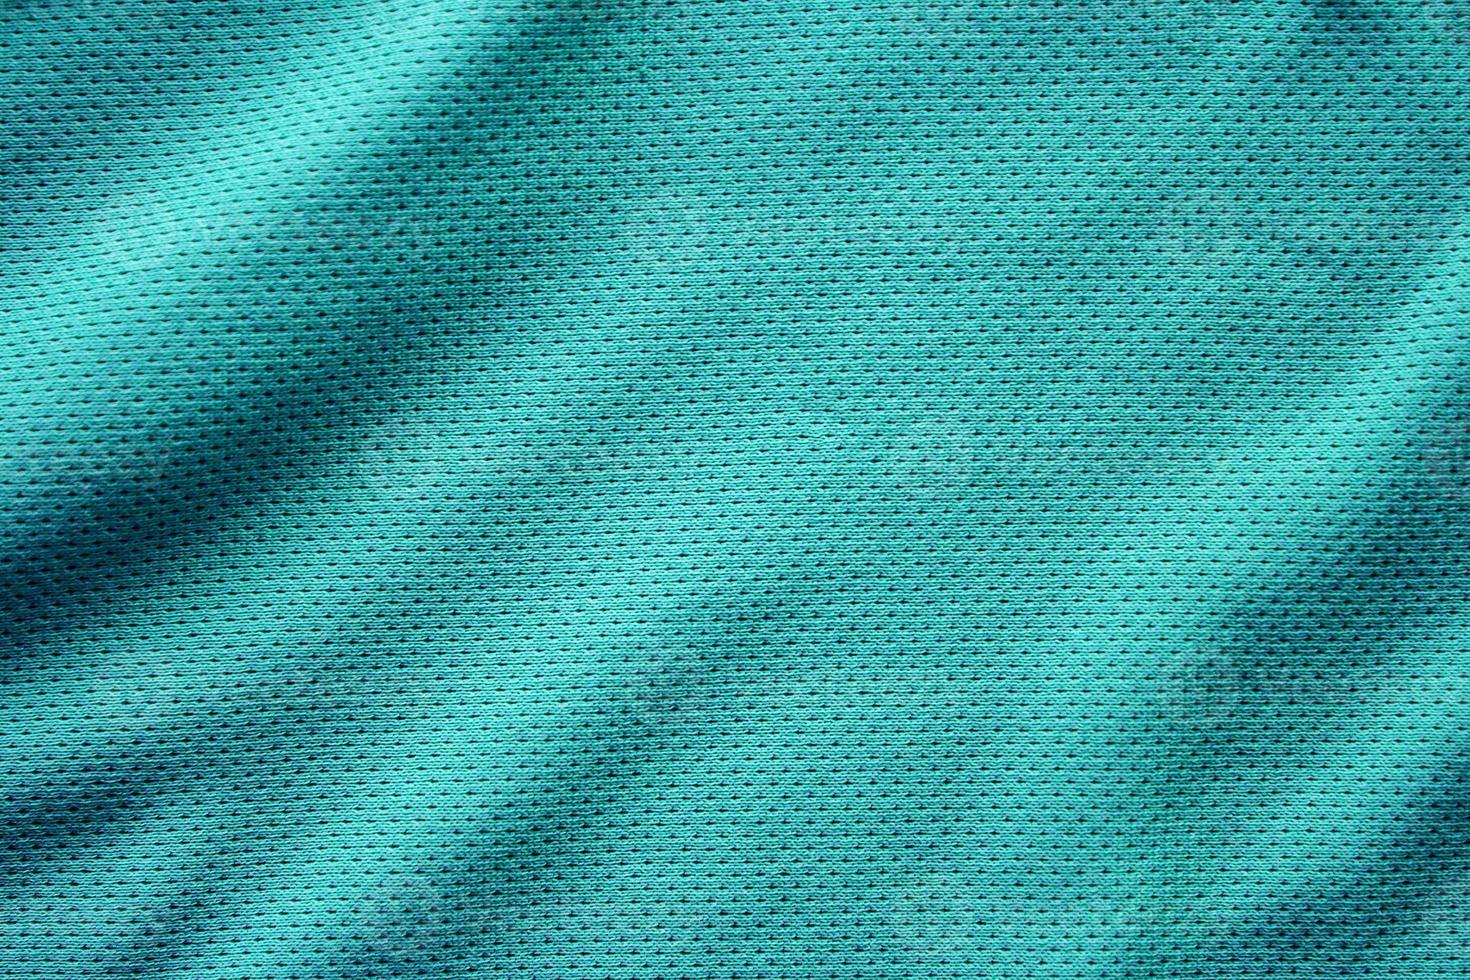 fond de texture de tissu de vêtements de sport, vue de dessus de la surface textile en tissu photo